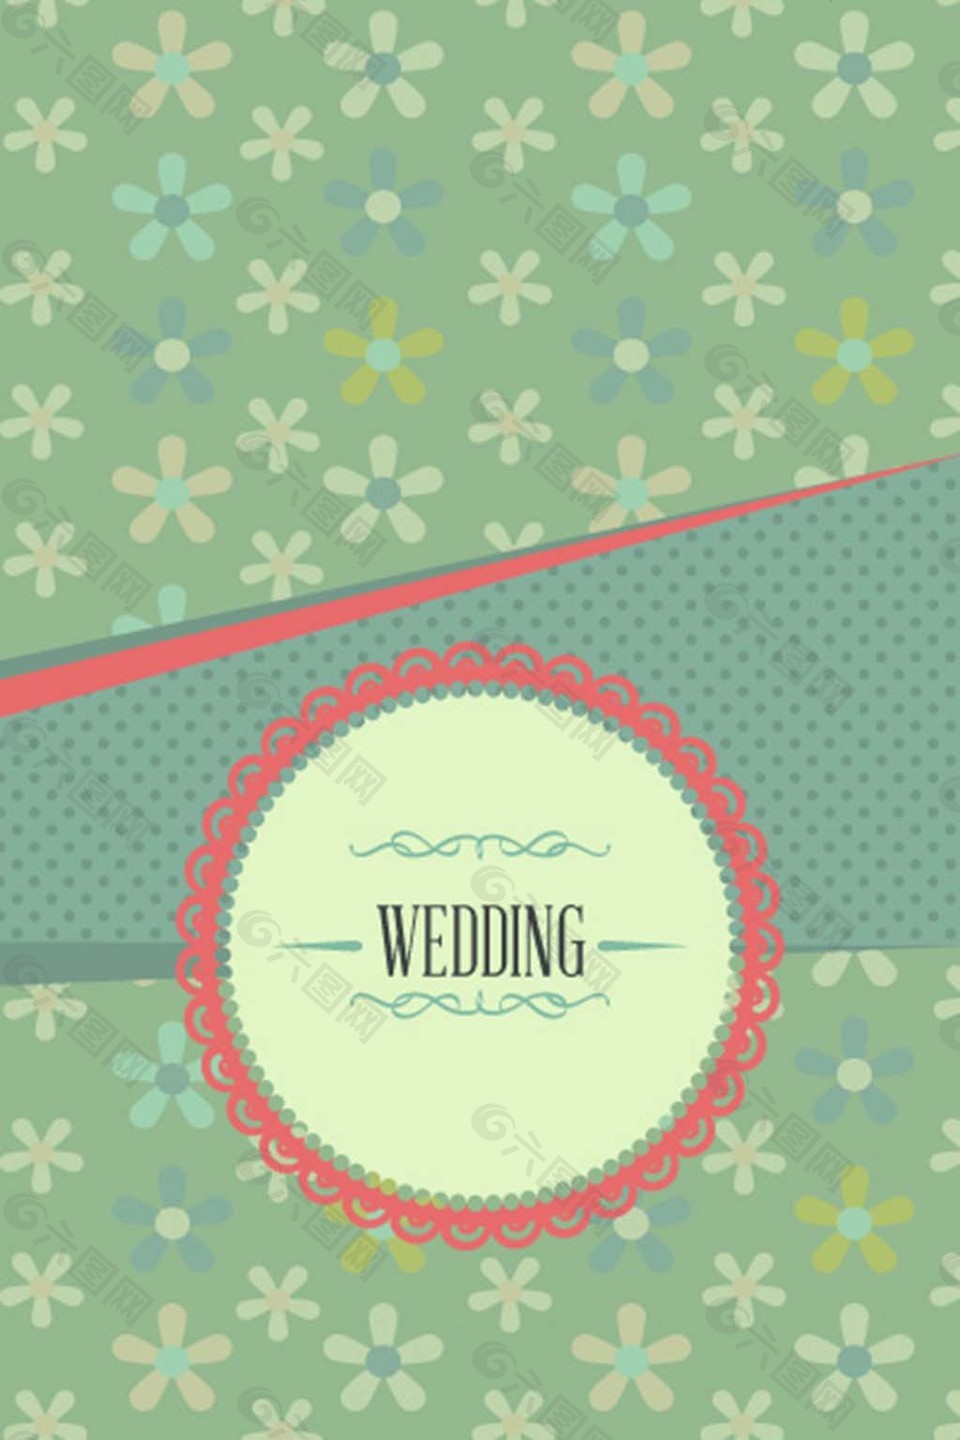 婚礼请柬封面花朵背景模板下载平面广告素材免费下载(图片编号